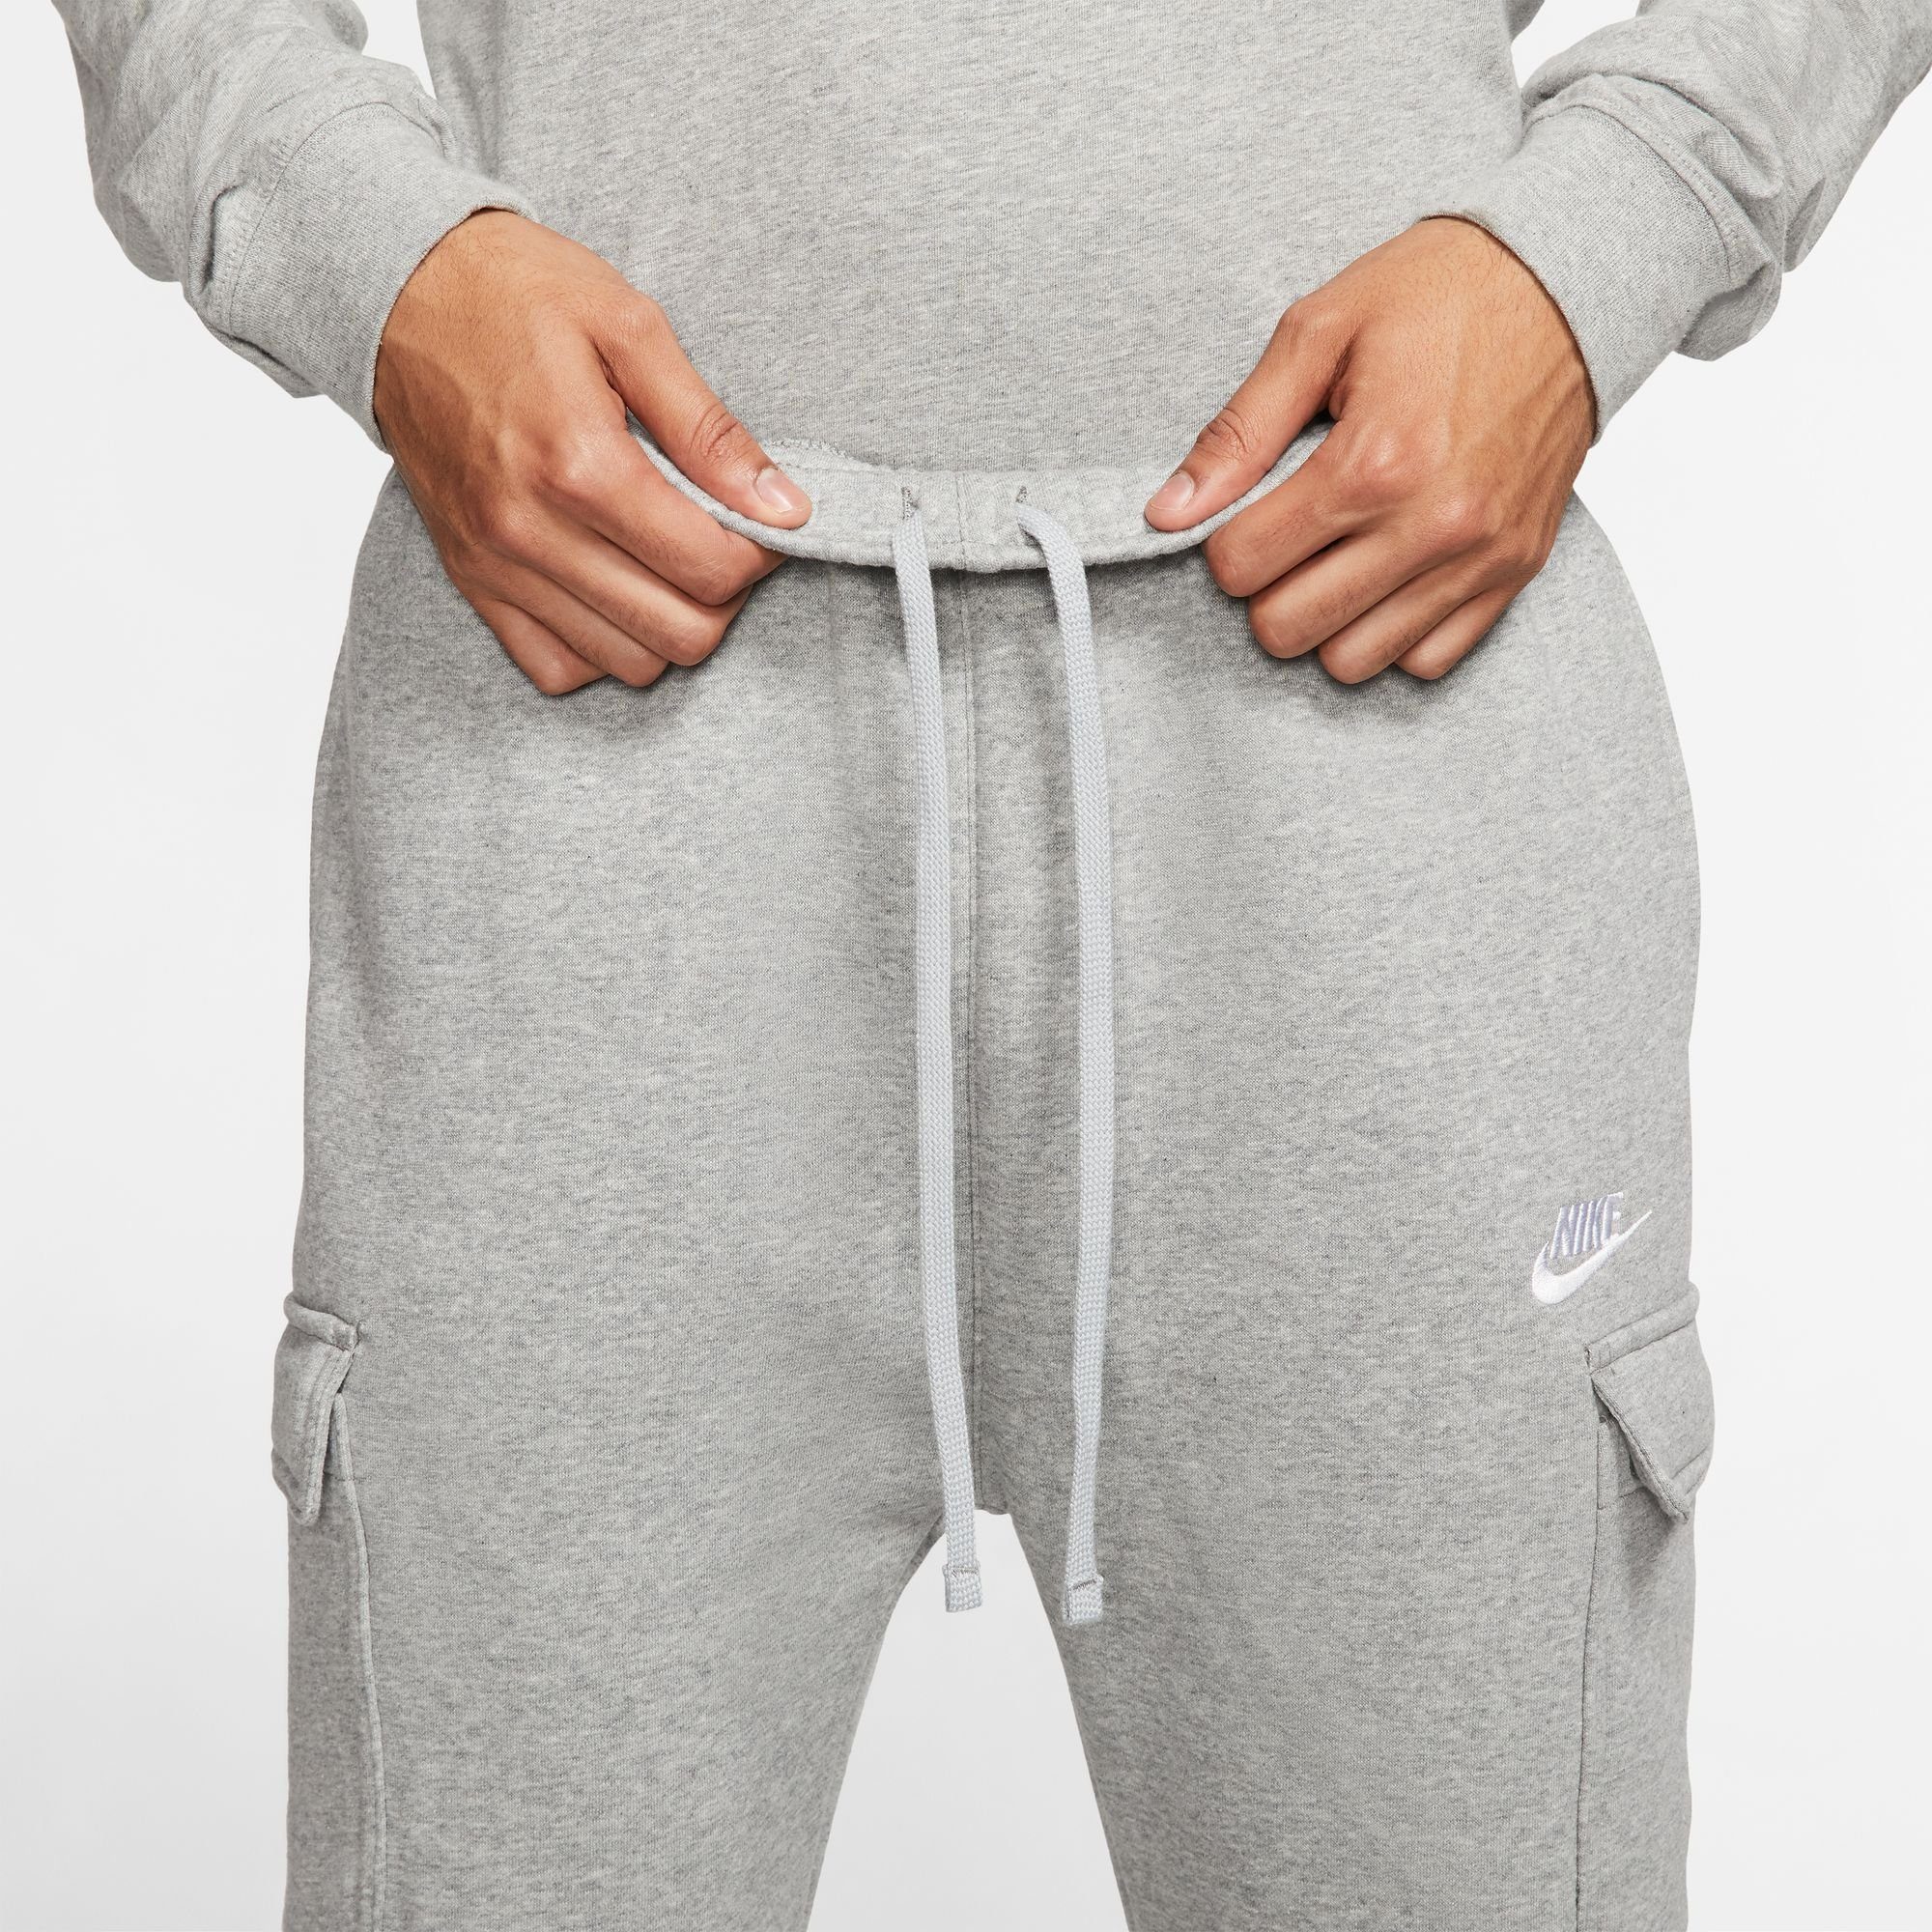 MEN'S CARGO Jogginghose CLUB Sportswear hellgrau-meliert Nike FLEECE PANTS